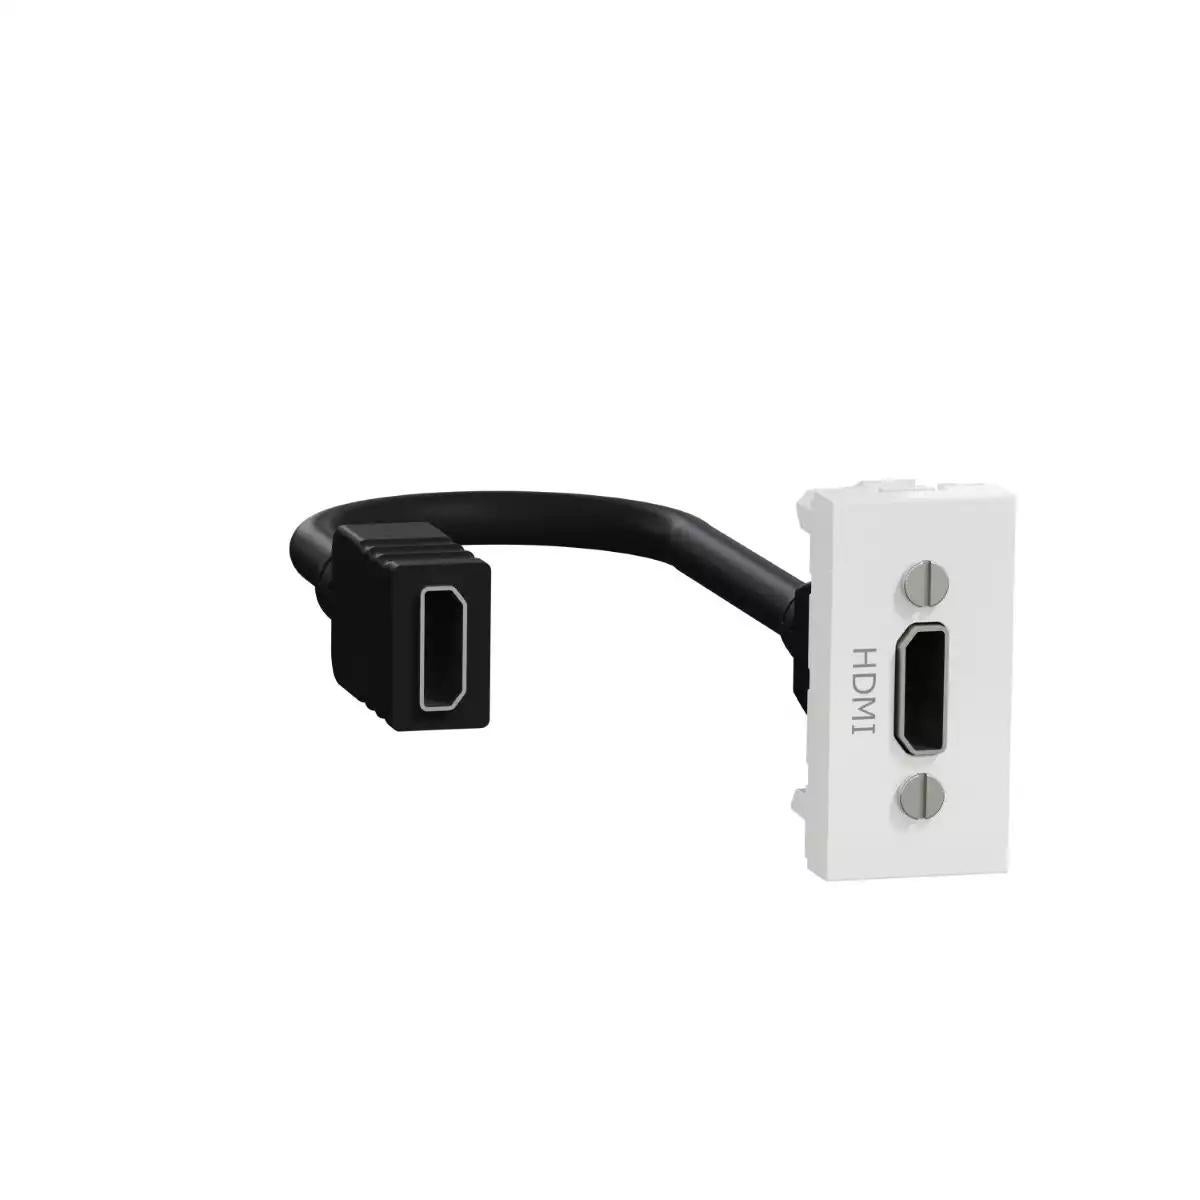 New Unica - HDMI connector prewired - 1 module - white